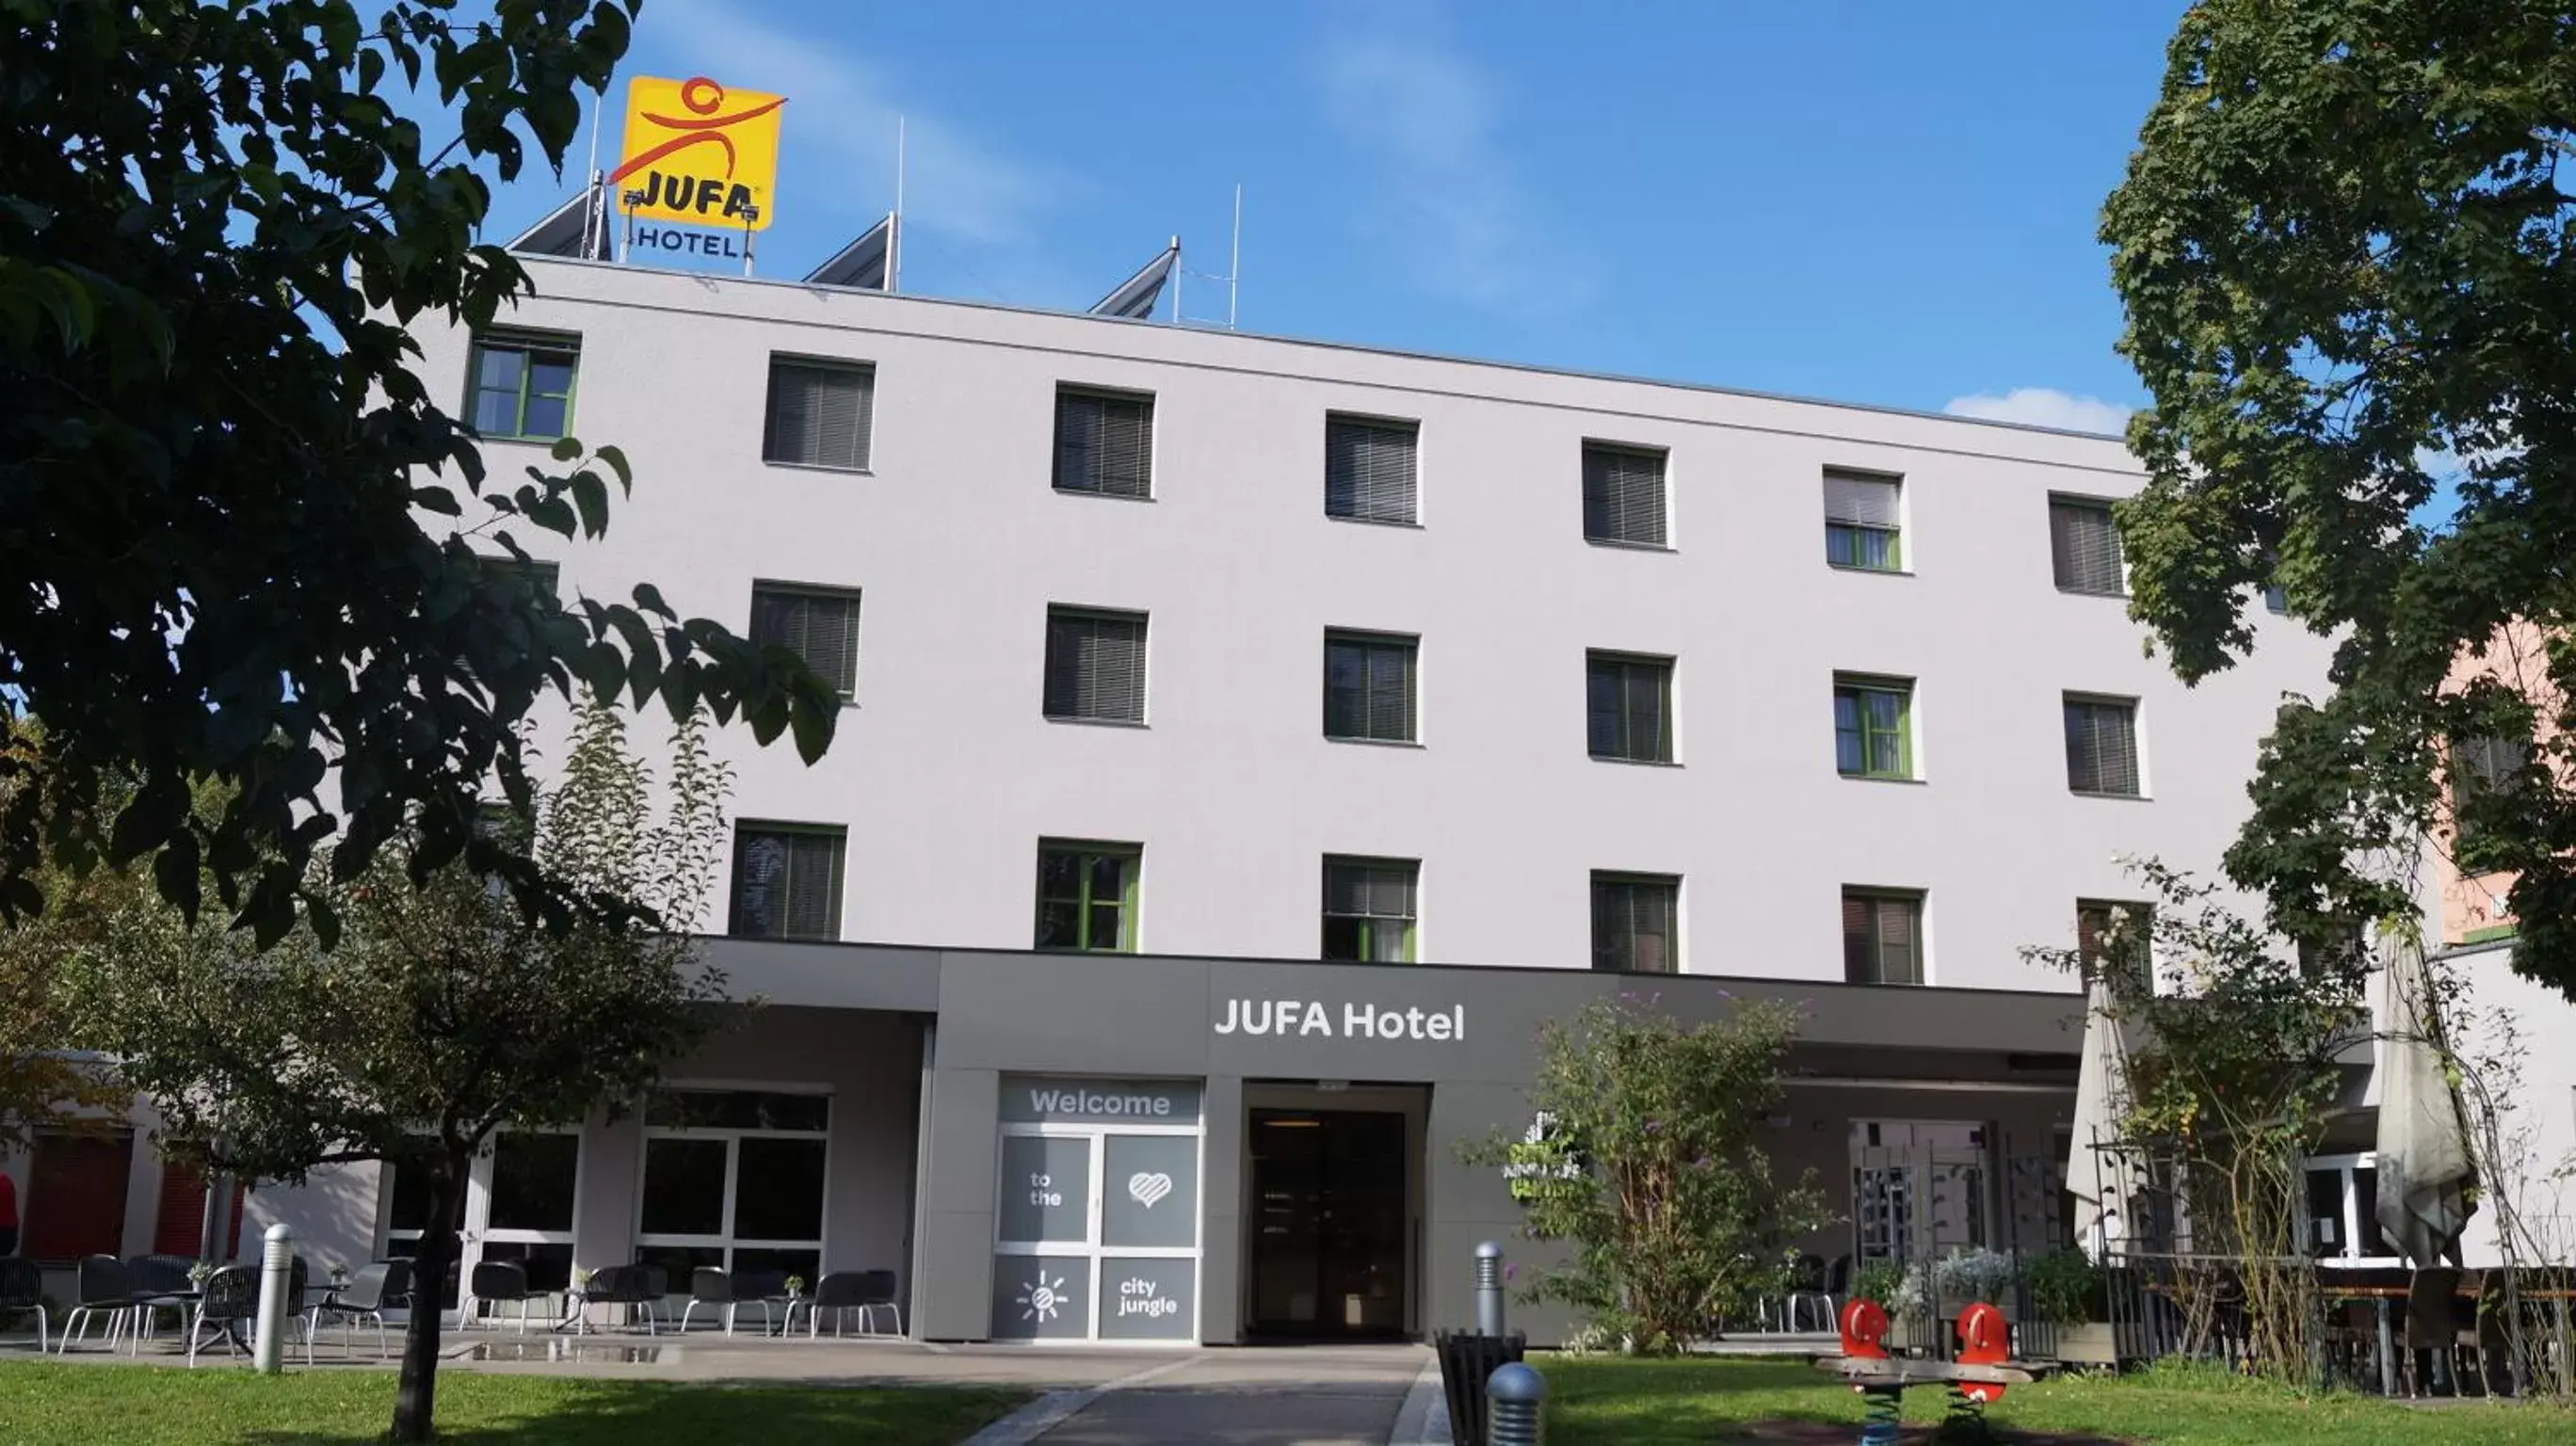 Facade/entrance, Property Building in JUFA Hotel Graz